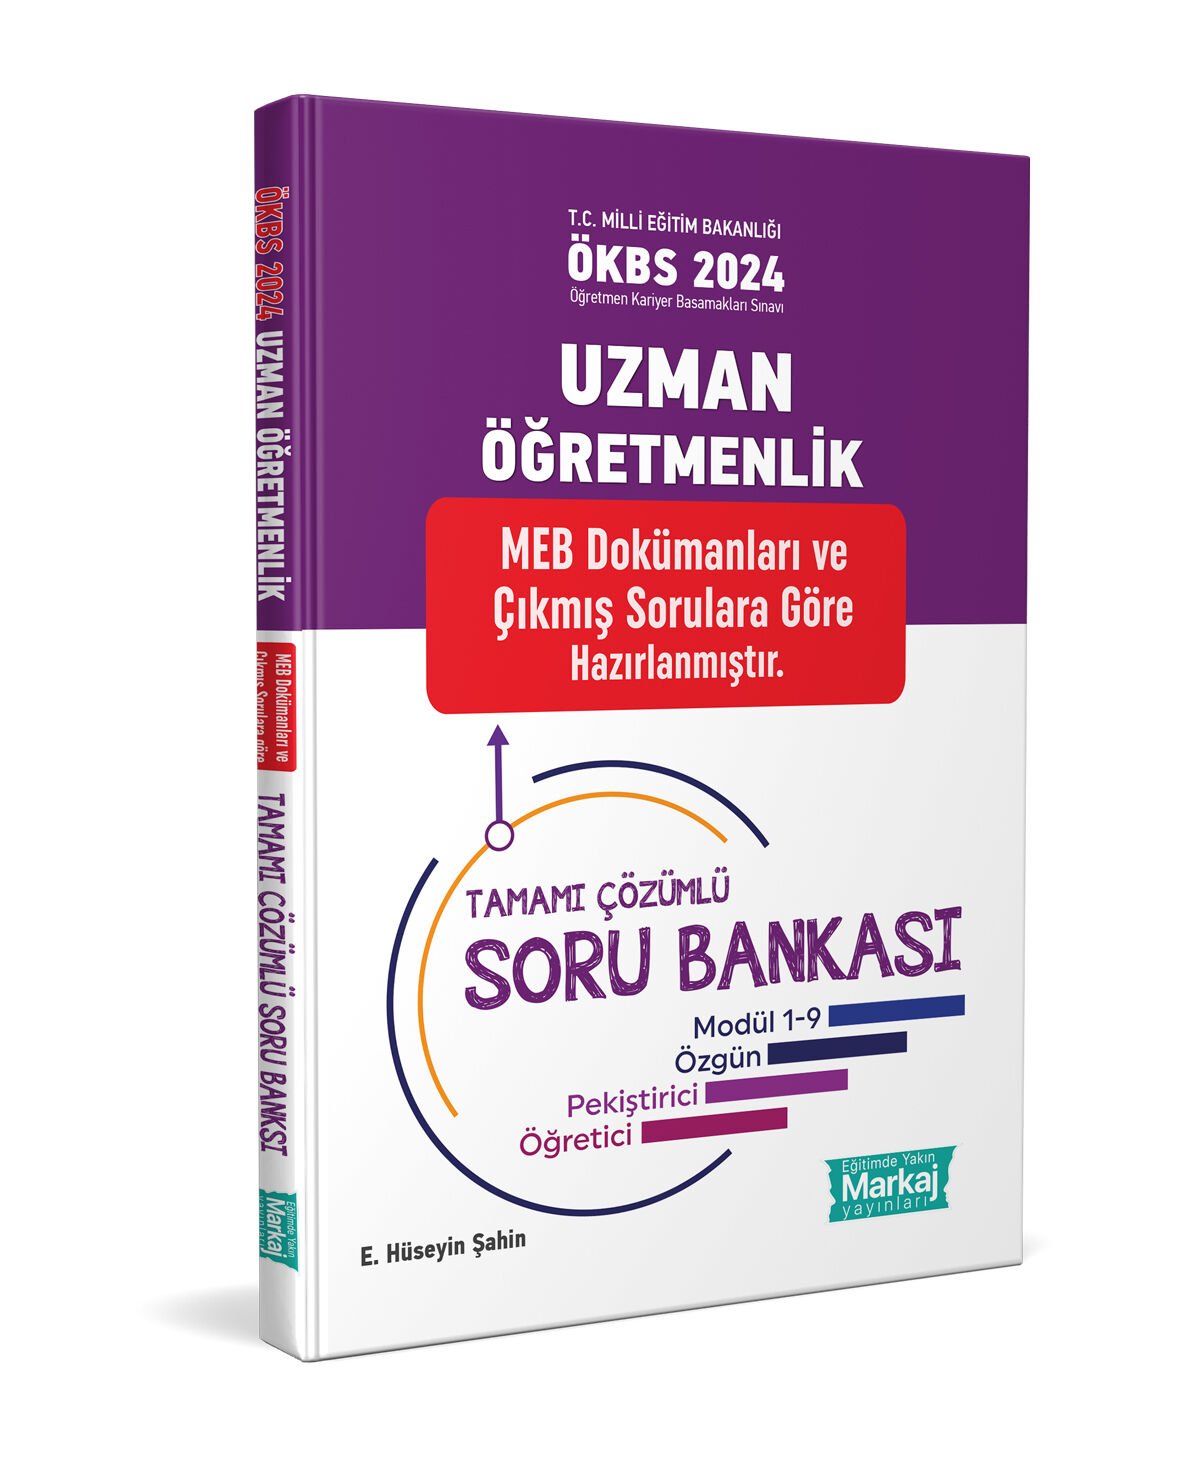 Uzman Öğretmenlik Tamamı Çözümlü Soru Bankası - 2023 Markaj Yayınları